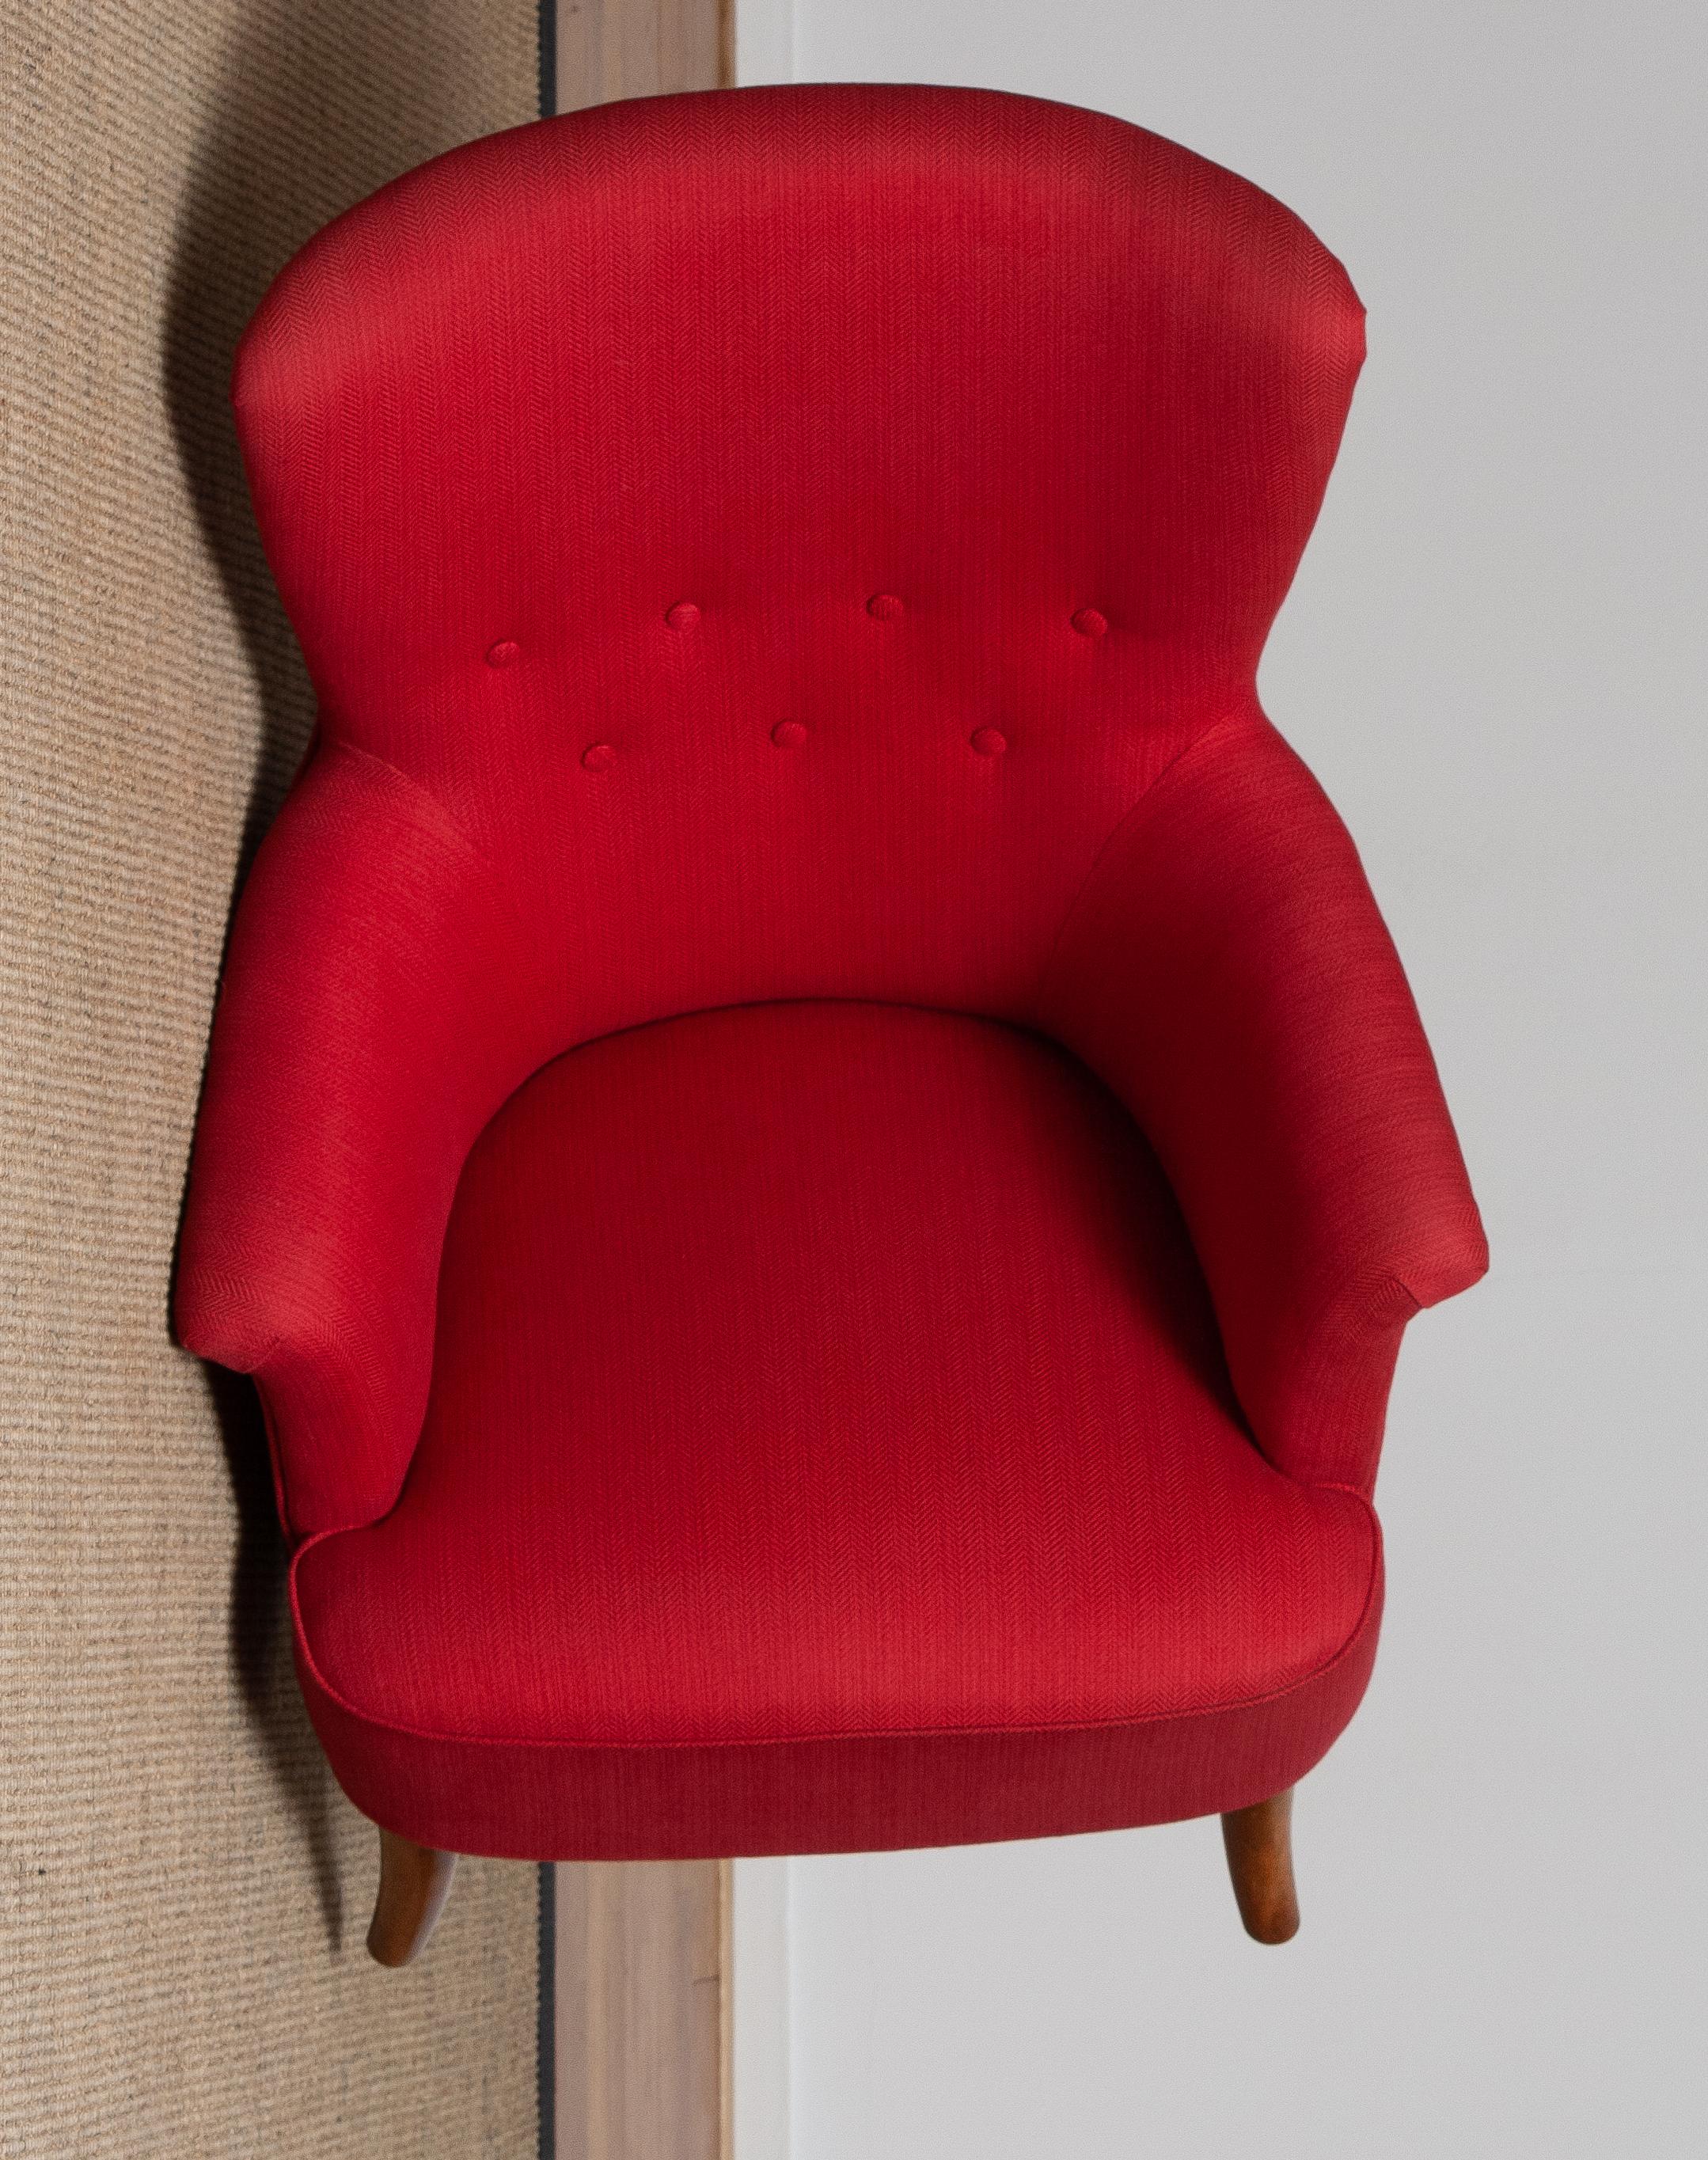 1940s, Fuchsia Easy / Lounge Chair by Carl Malmsten for Oh Sjogren, Sweden 7